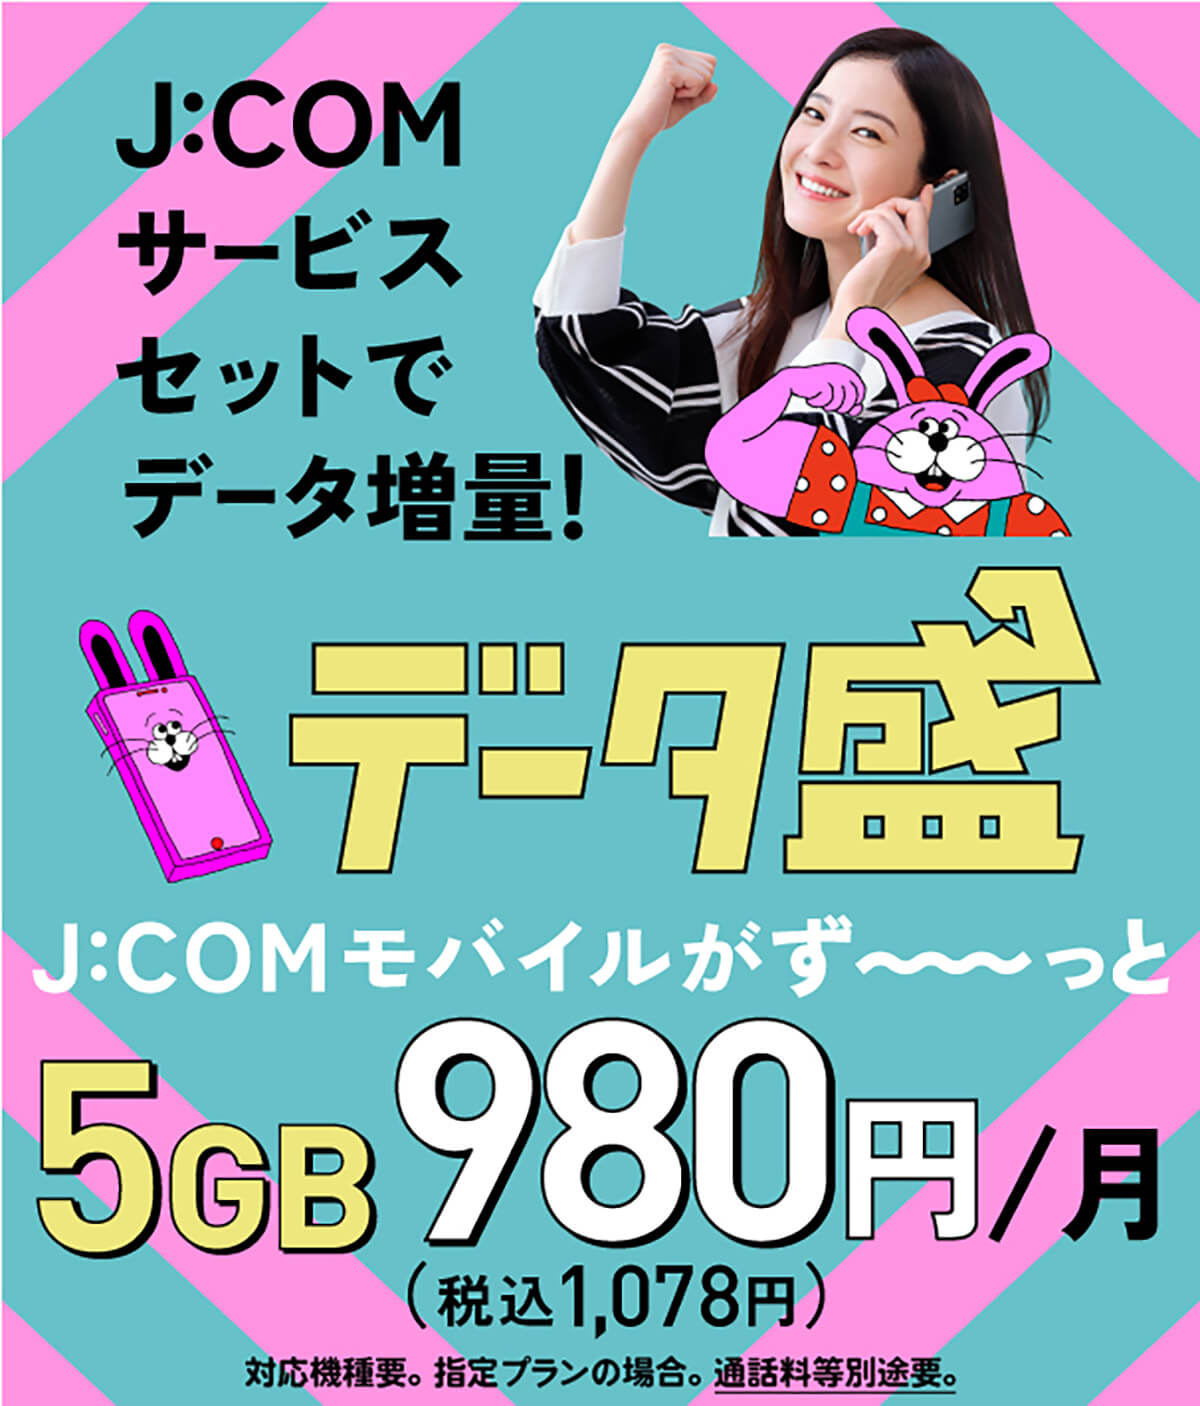 J:COM MOBILEのキャンペーン1